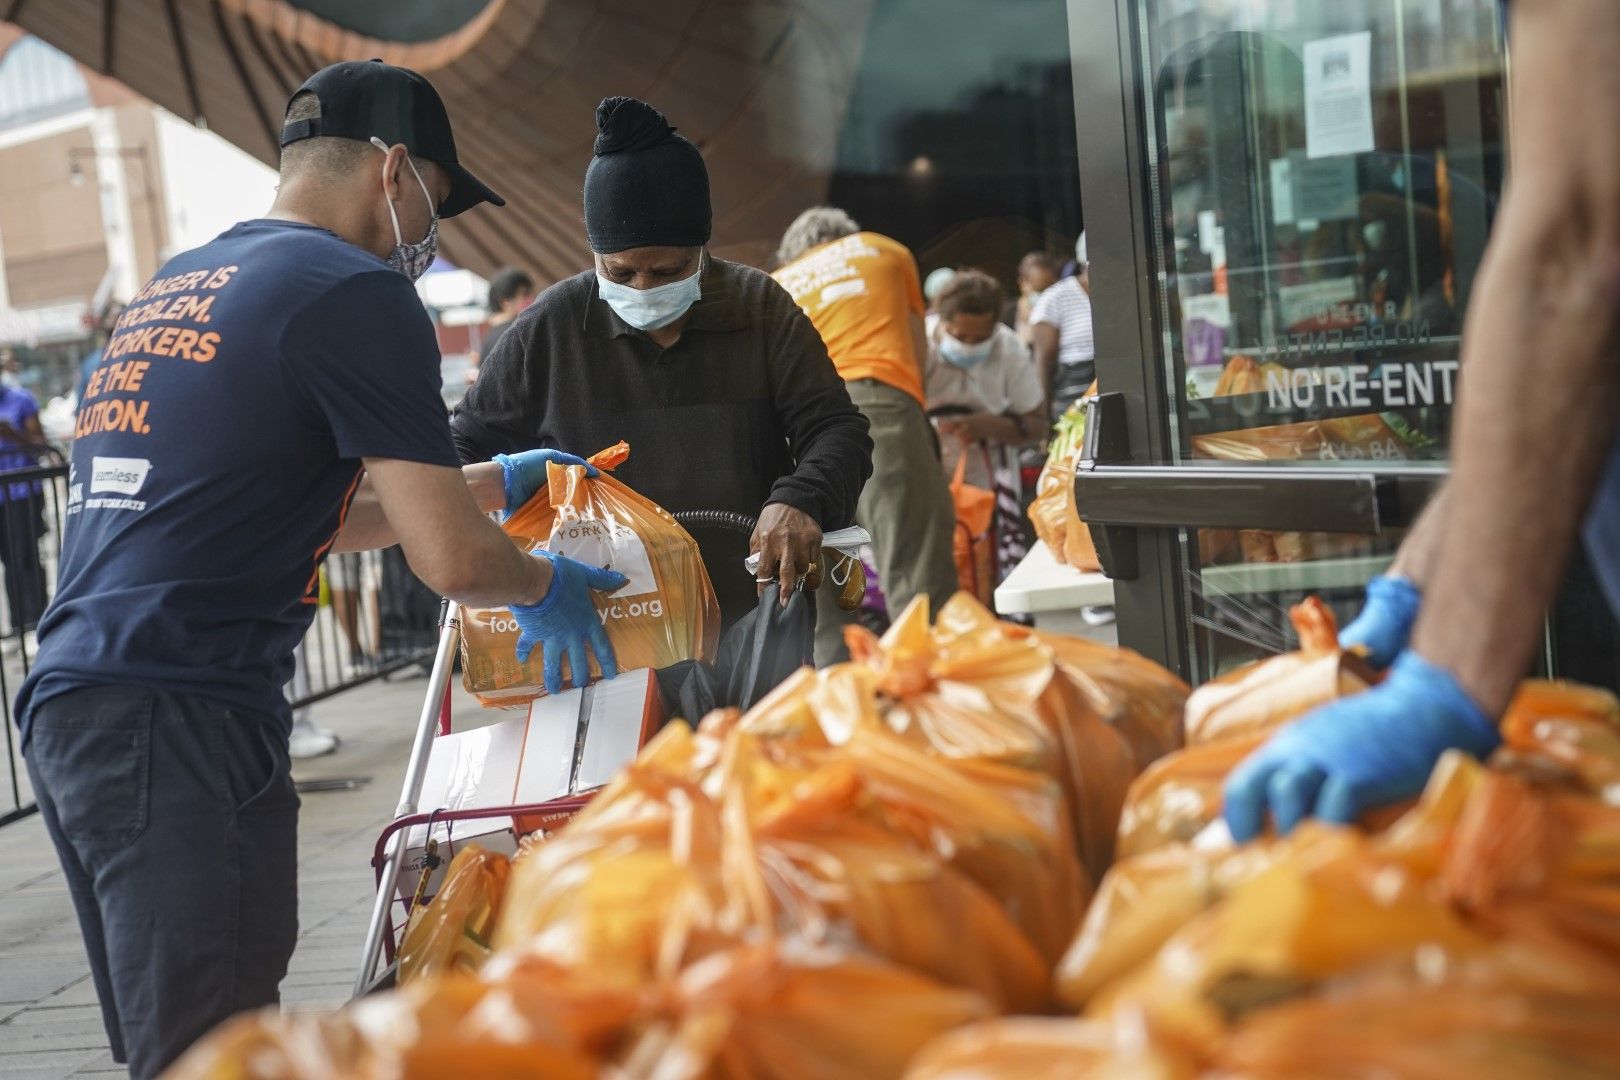 10 септември. В Ню Йорк събират храна, която постъпва в складовете на Хранителната банка в помощ на тези, които имат нужда в условията на пандемия